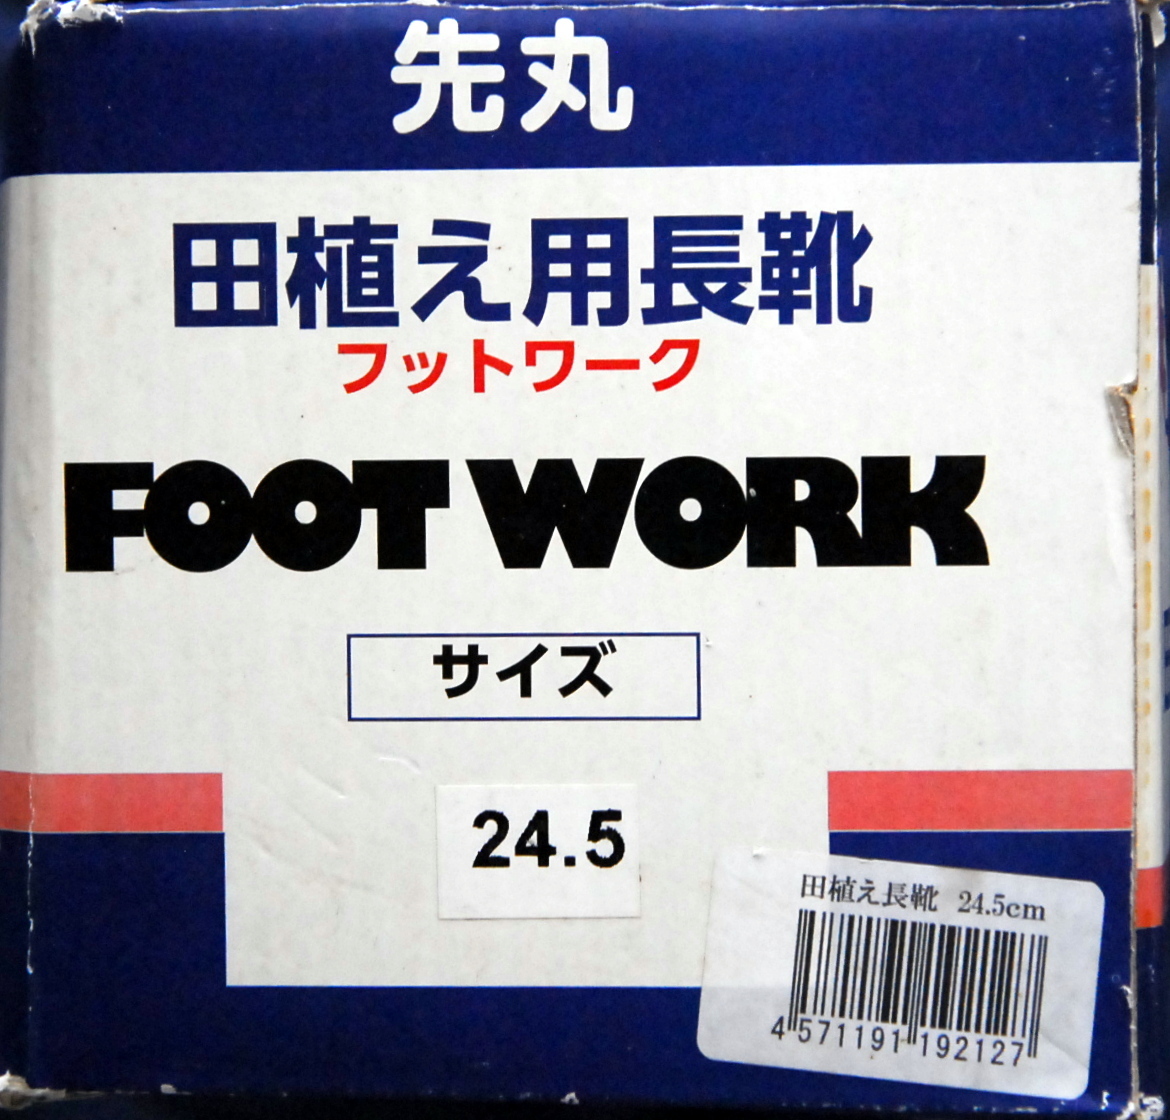  пересадка риса * рисовое поле .* сапоги * размер 24.5cm*FOOT WORK* foot Work *. круг * антибактериальный дезодорация обработка * не использовался товар * единая стоимость доставки 520 иен 